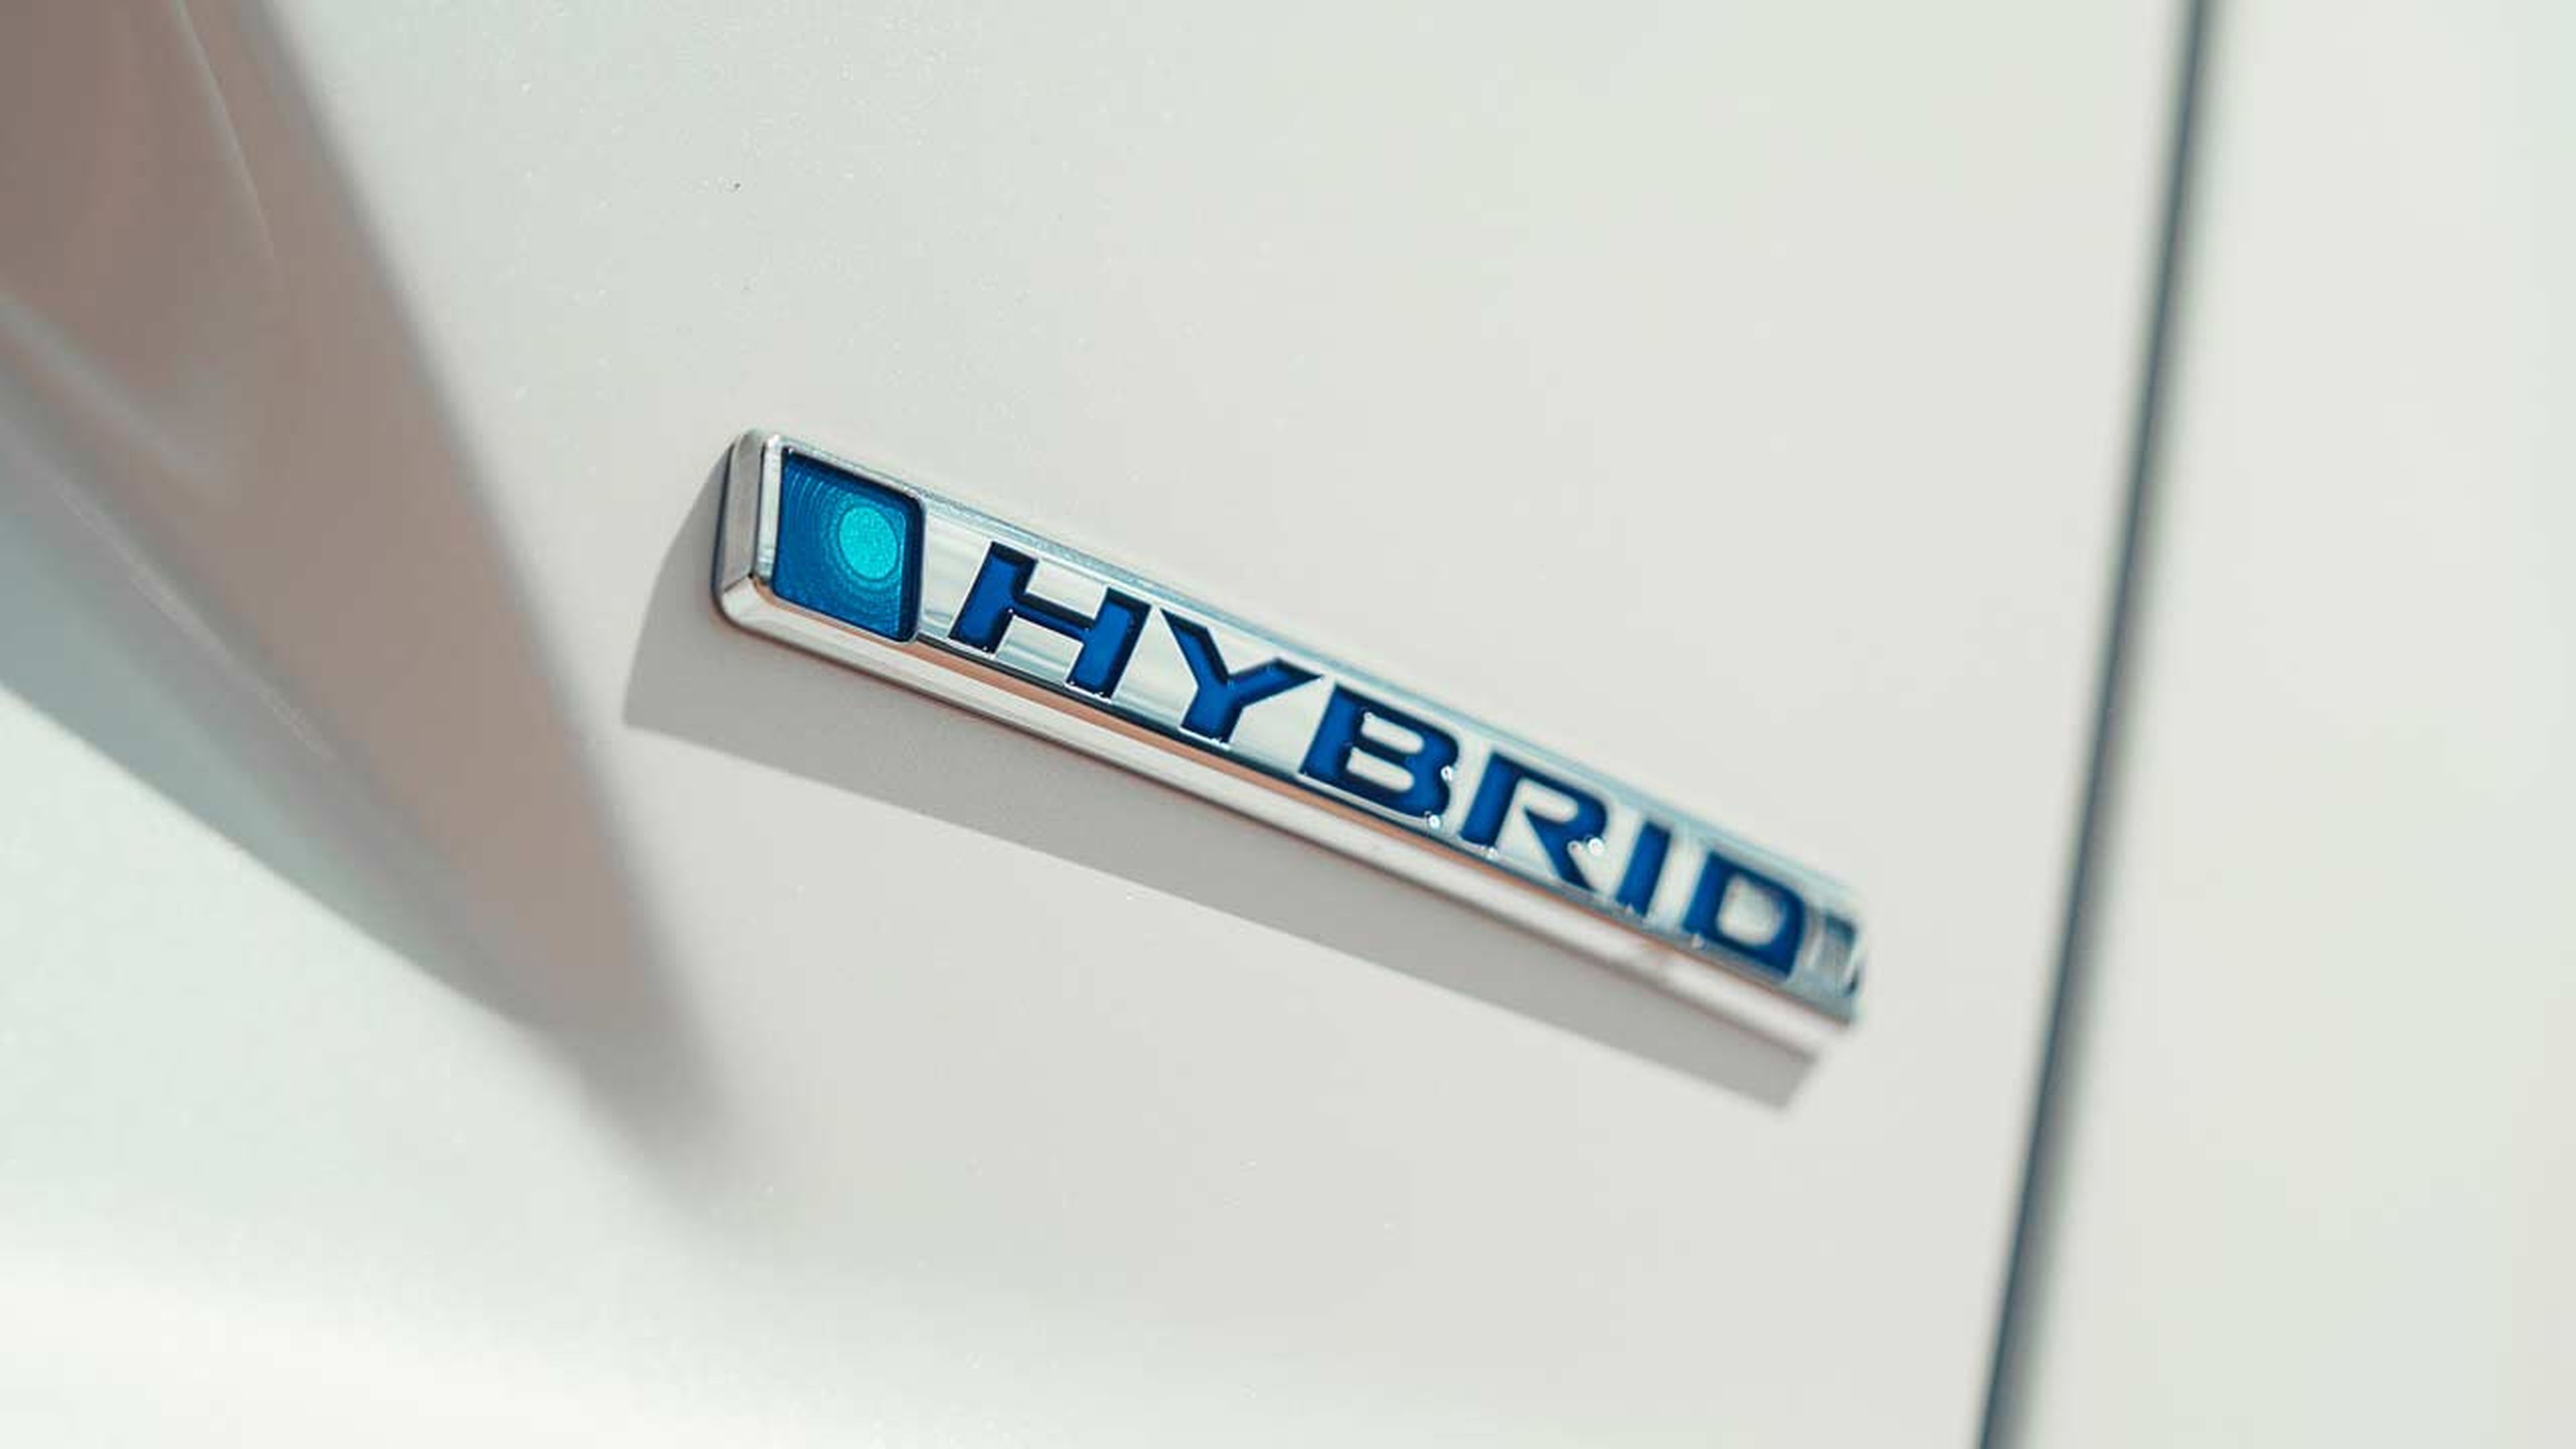 Honda CR-V 2019 Hybrid